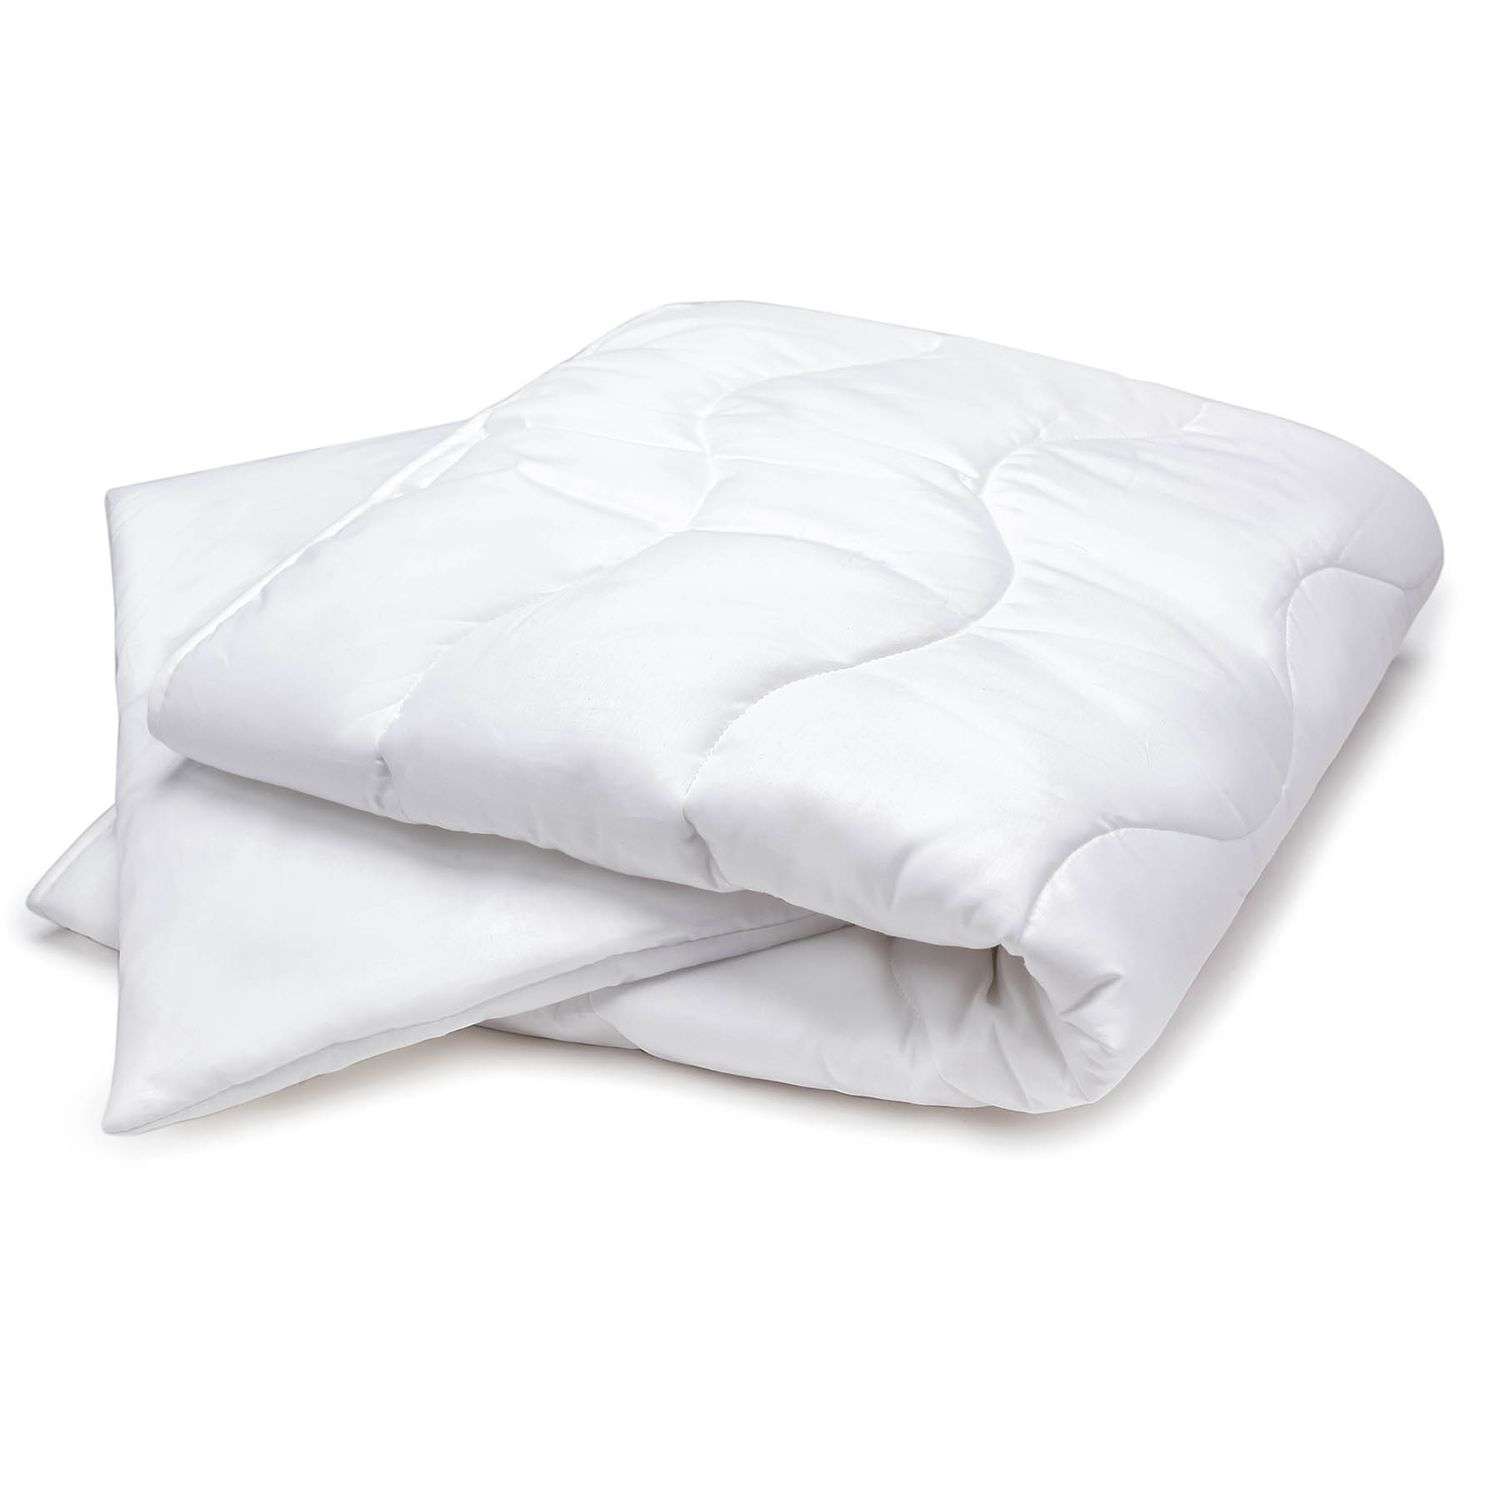 Комплект постельных принадлежностей Perina одеяло и подушка ОП2 - фото 1